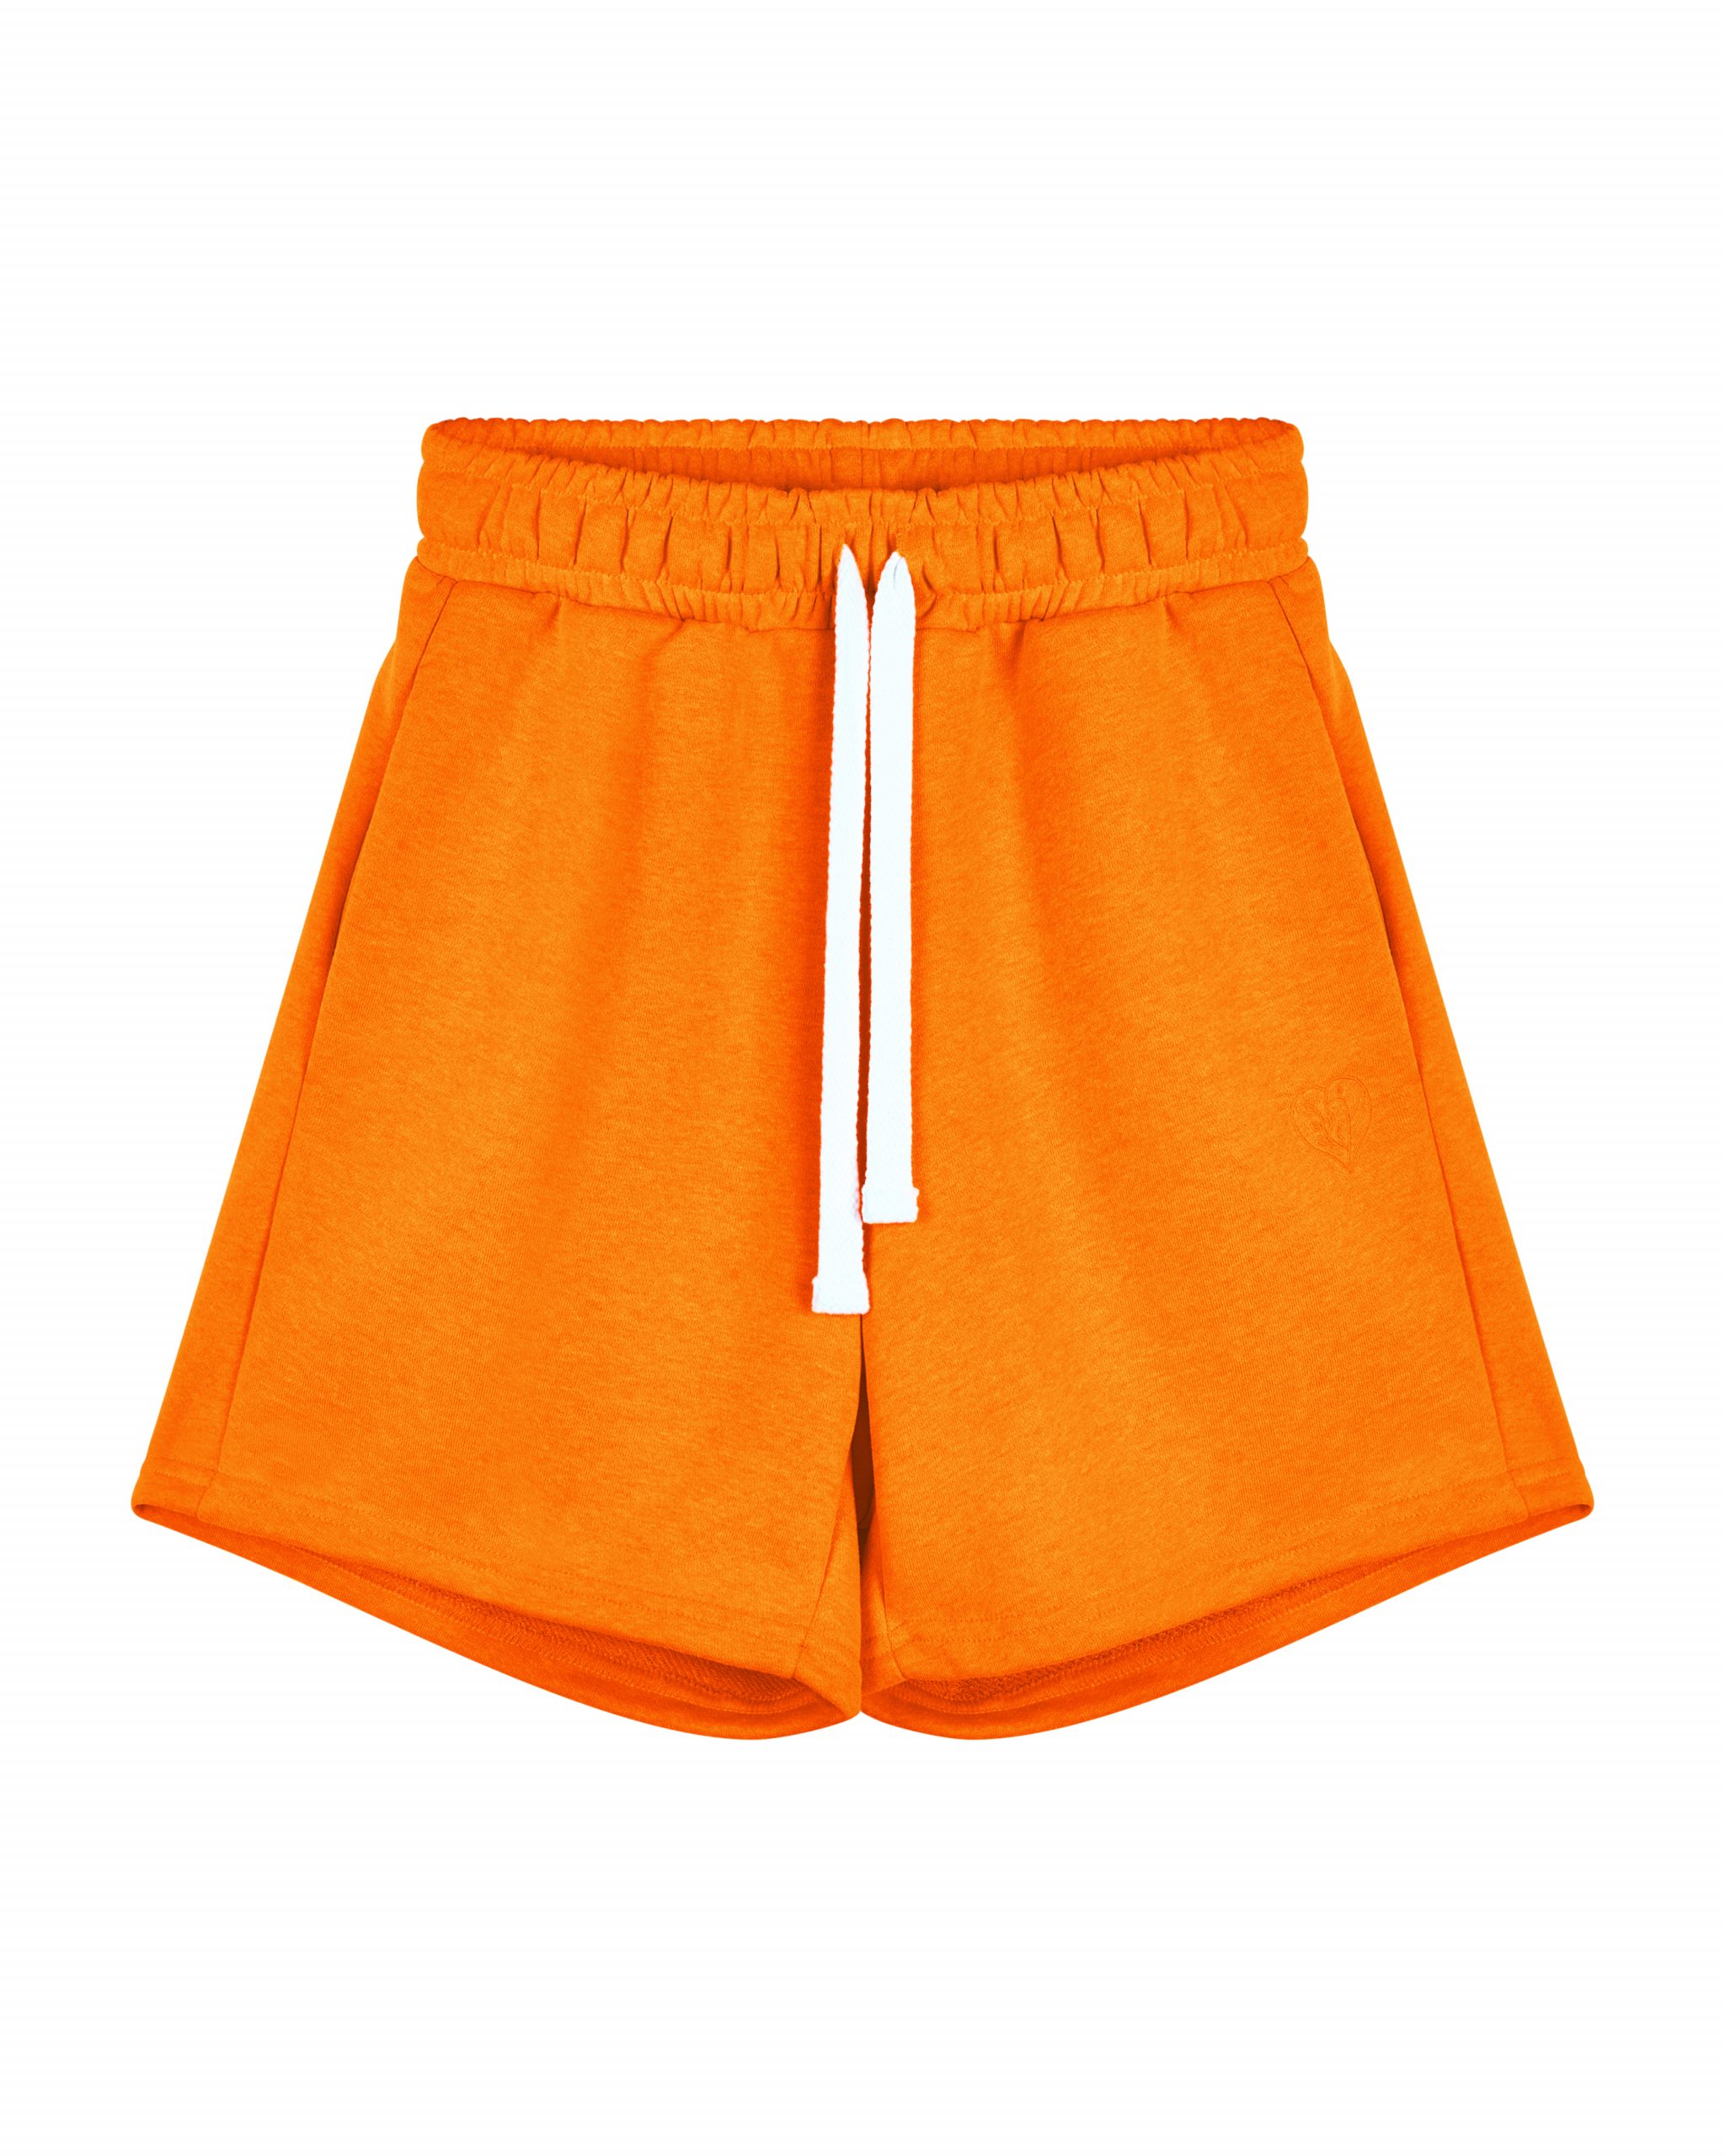 Повседневные шорты женские Atmosphere Summer vibes Color оранжевые M